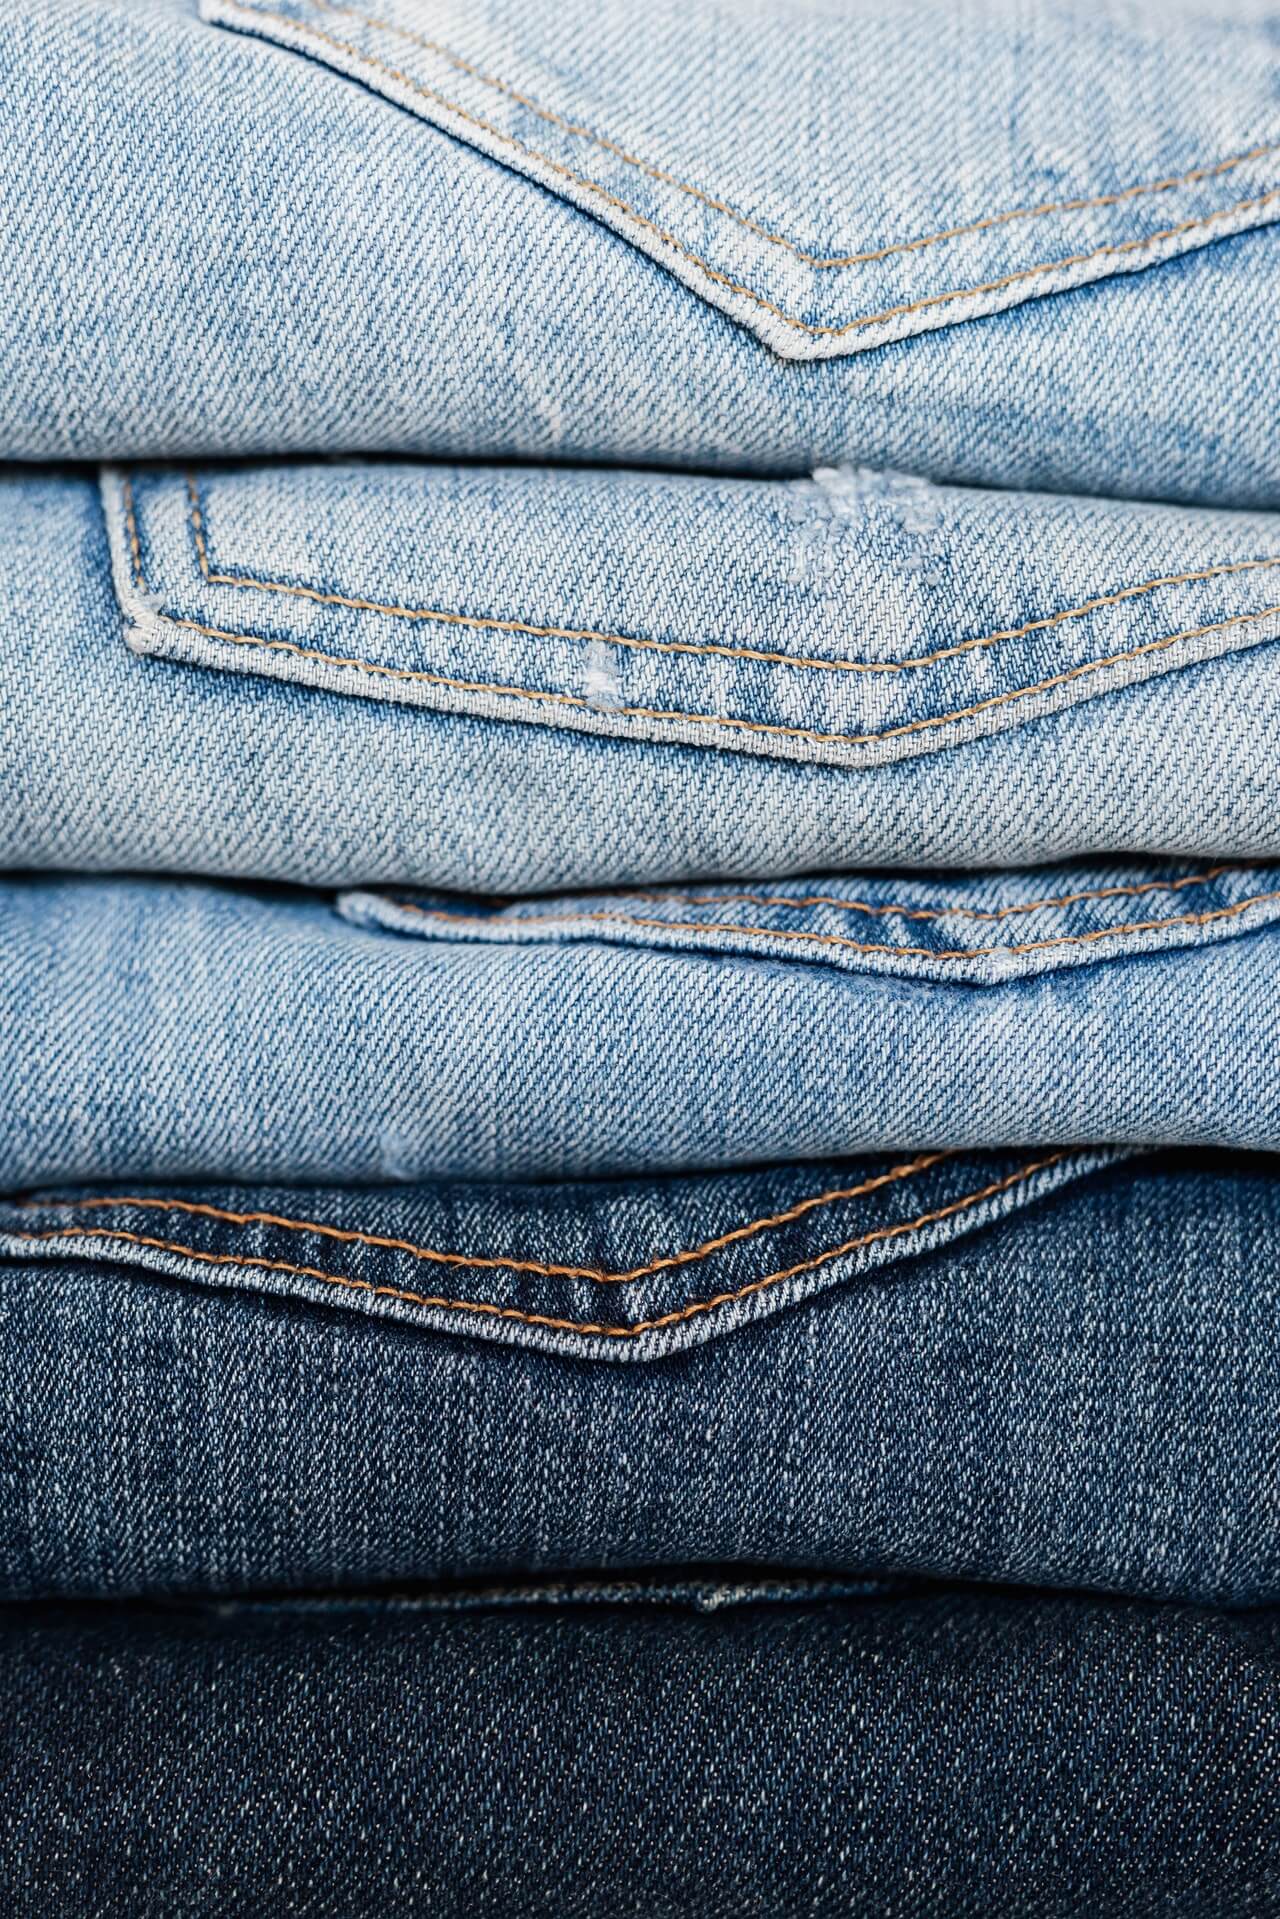 Co to jest jeans ekologiczny?